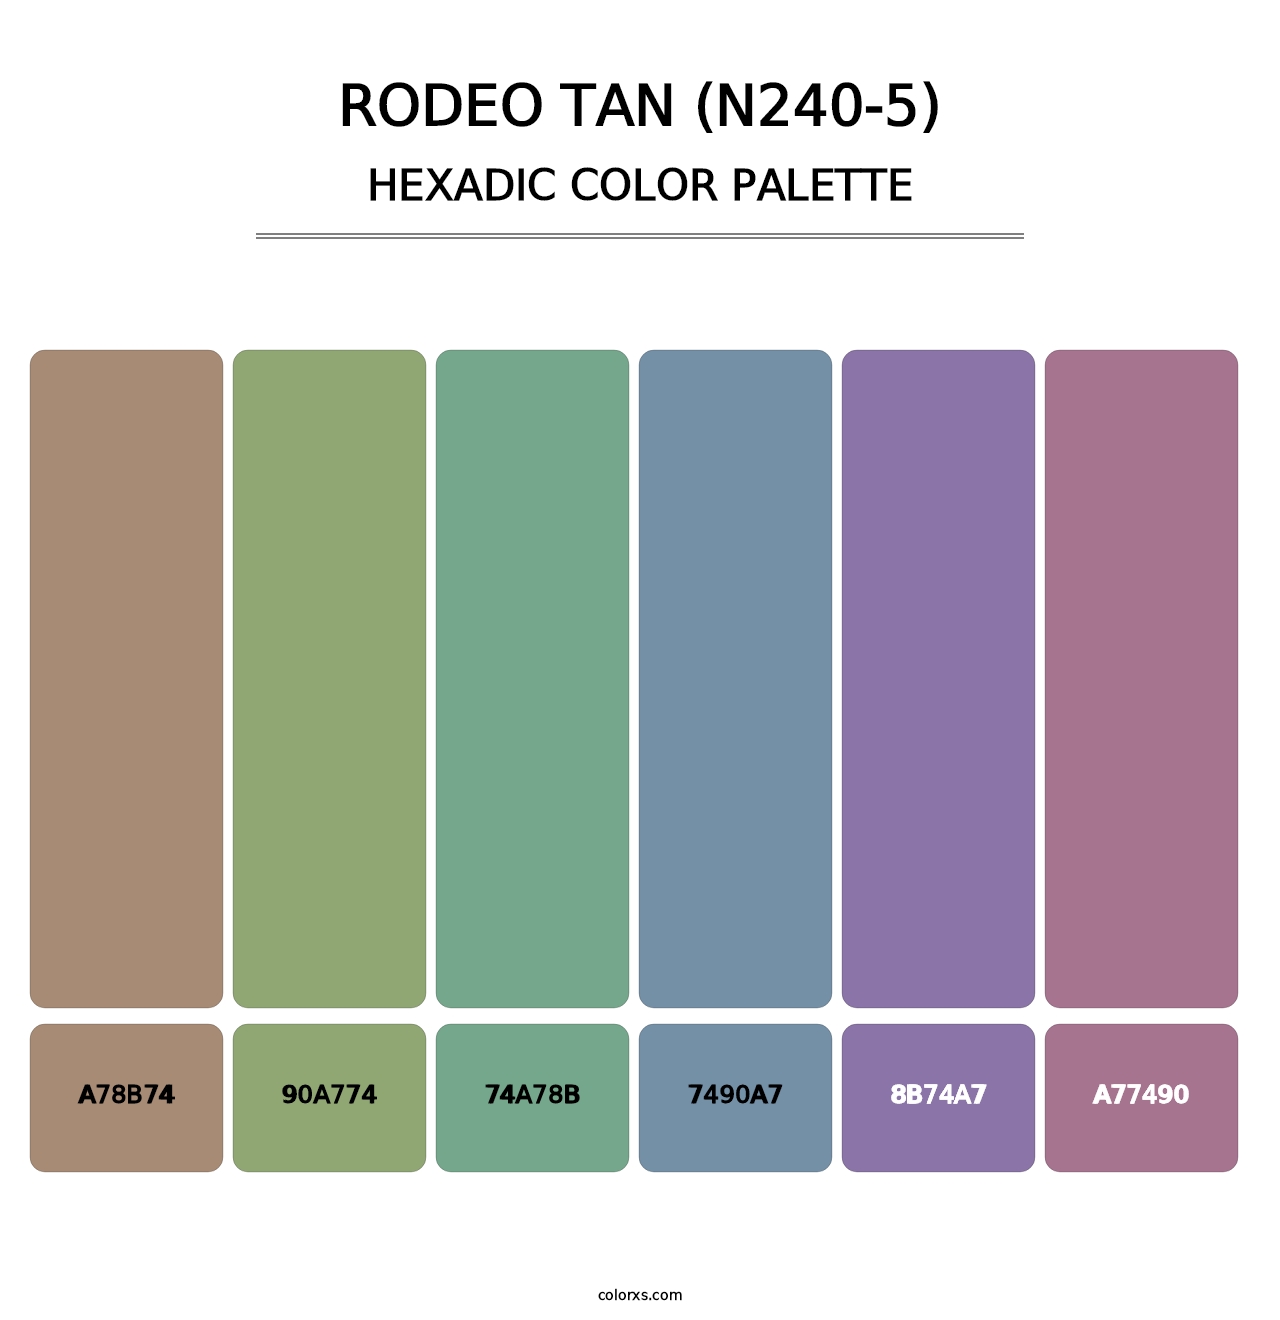 Rodeo Tan (N240-5) - Hexadic Color Palette